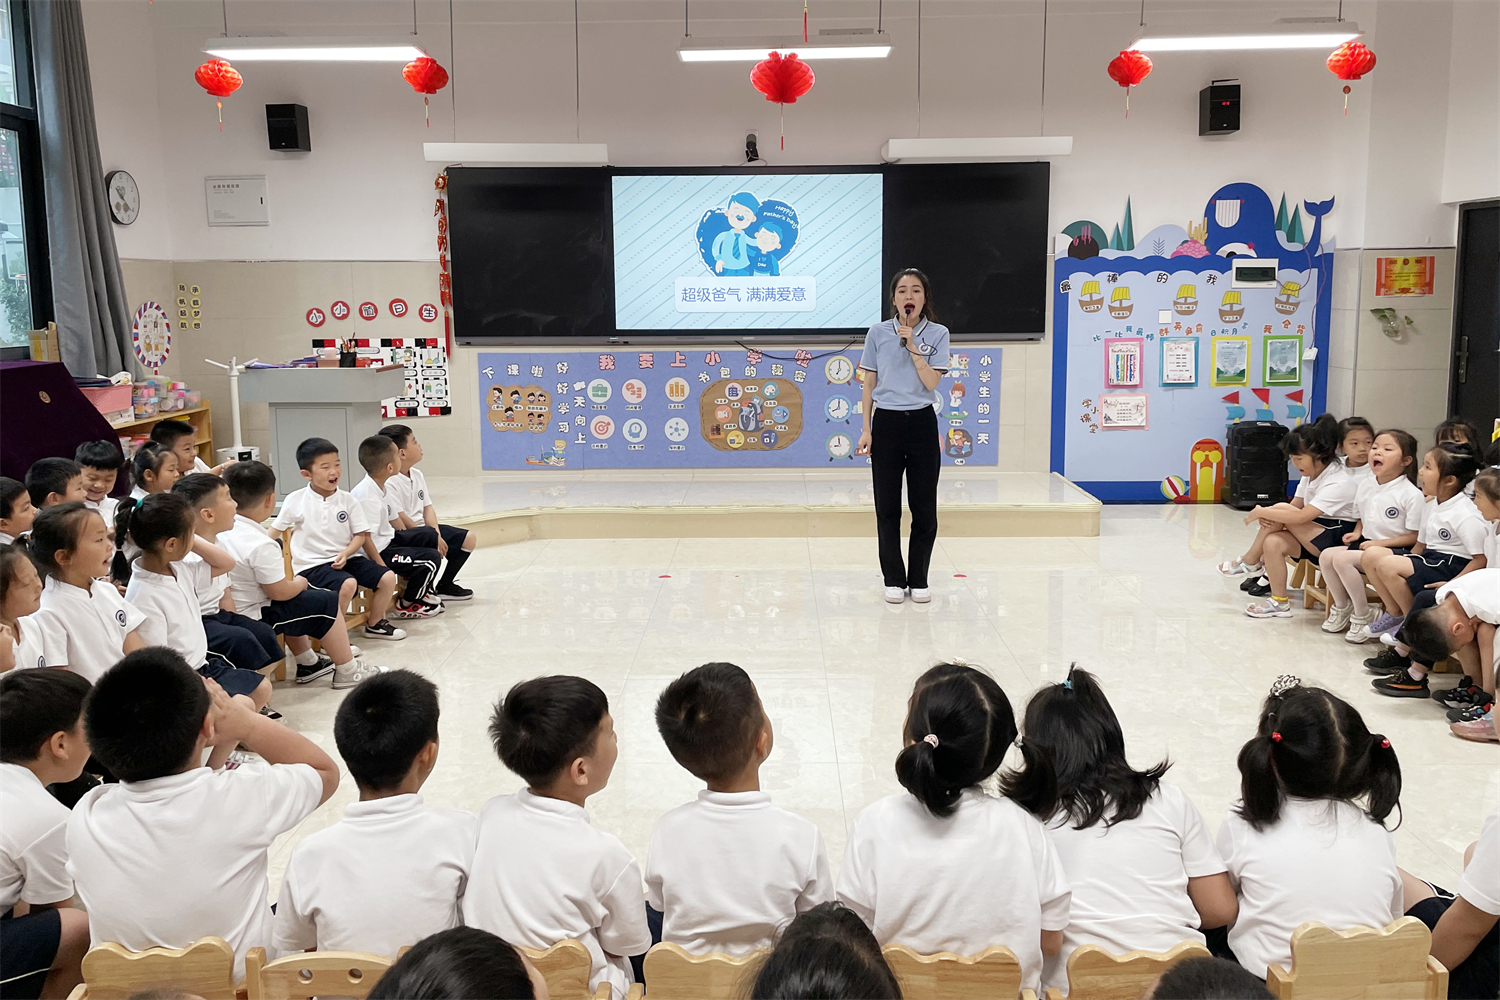 超级爸气·满满爱意——汉江实验学校幼儿园父亲节感恩系列活动